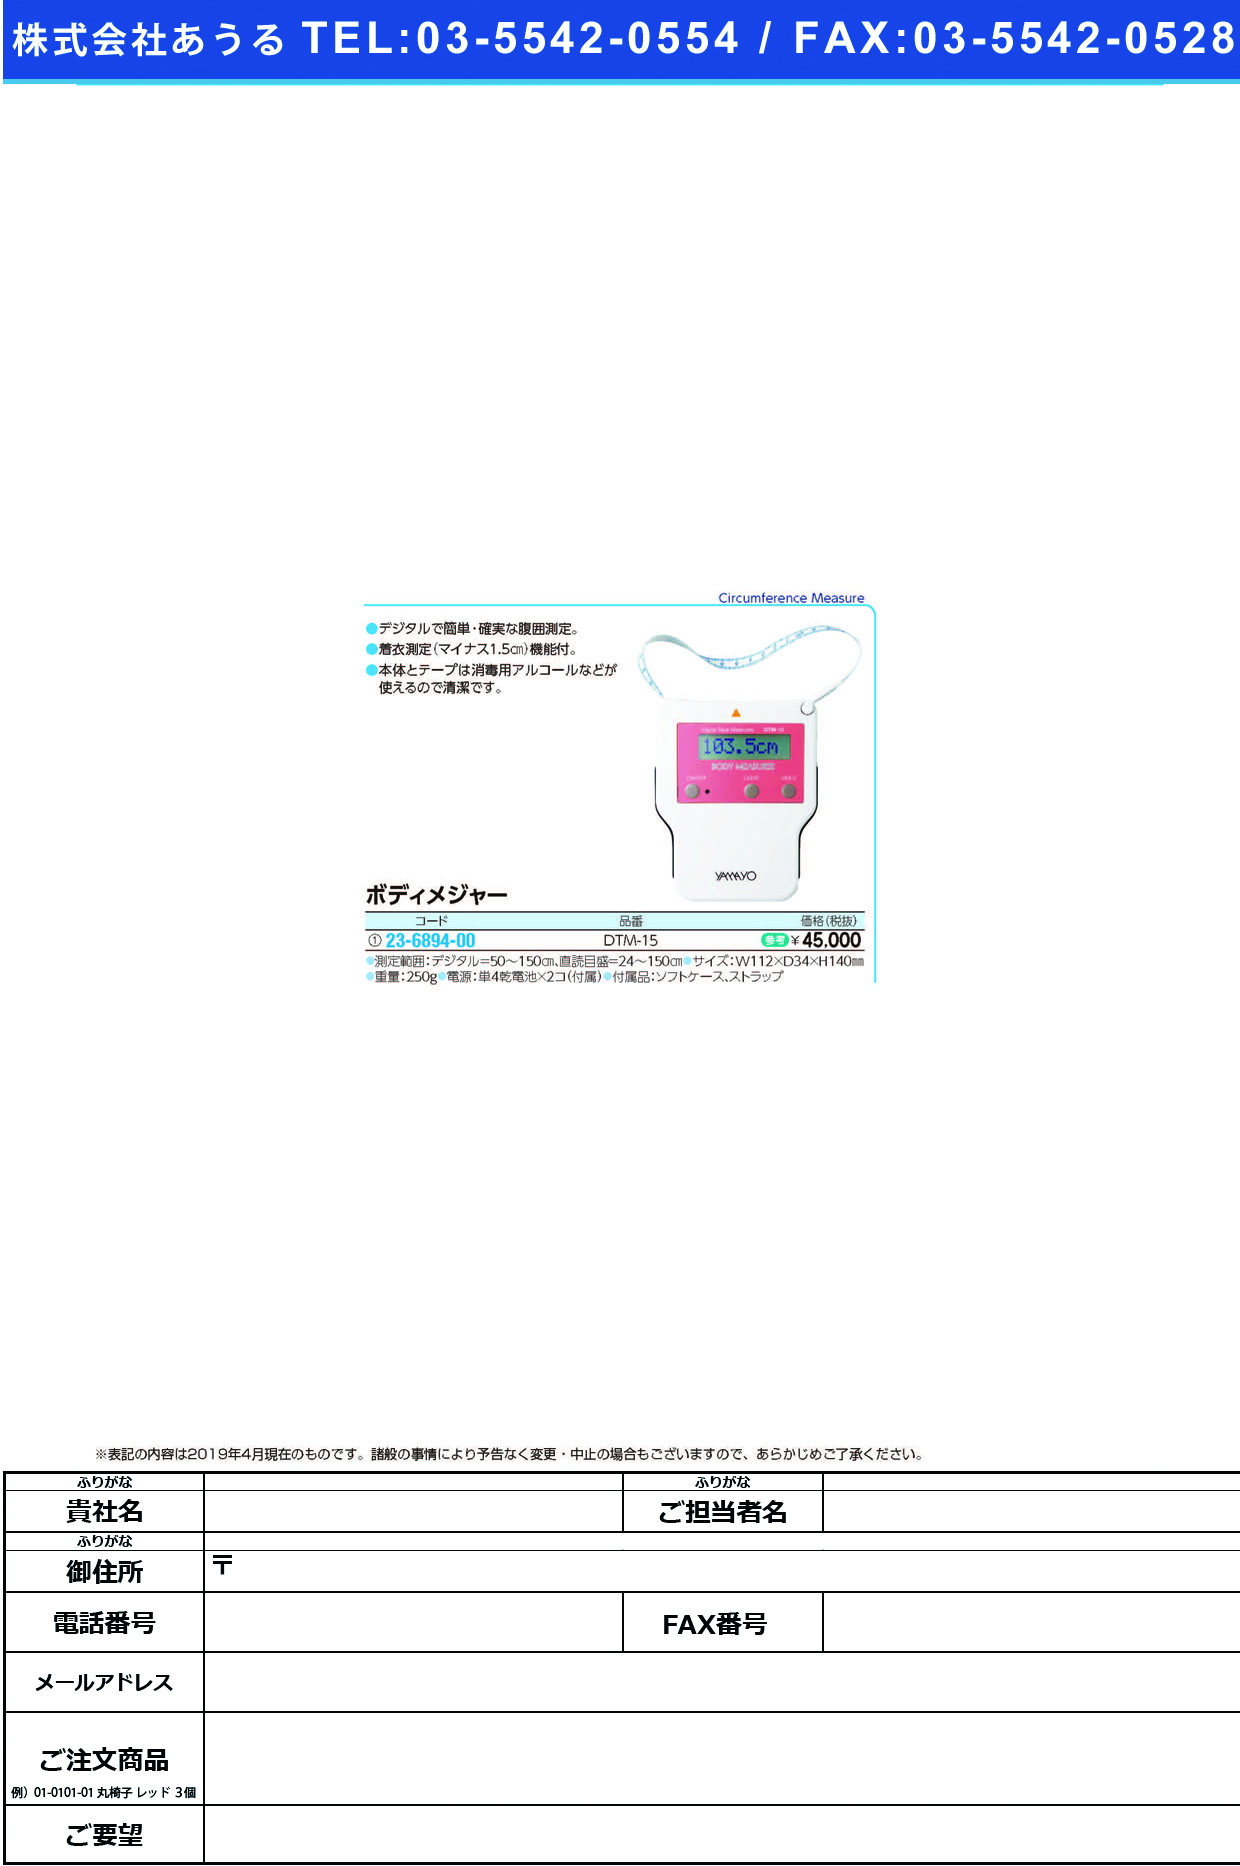 (23-6894-00)ボディメジャー DTM-15 ﾎﾞﾃﾞｨﾒｼﾞｬｰ【1台単位】【2019年カタログ商品】